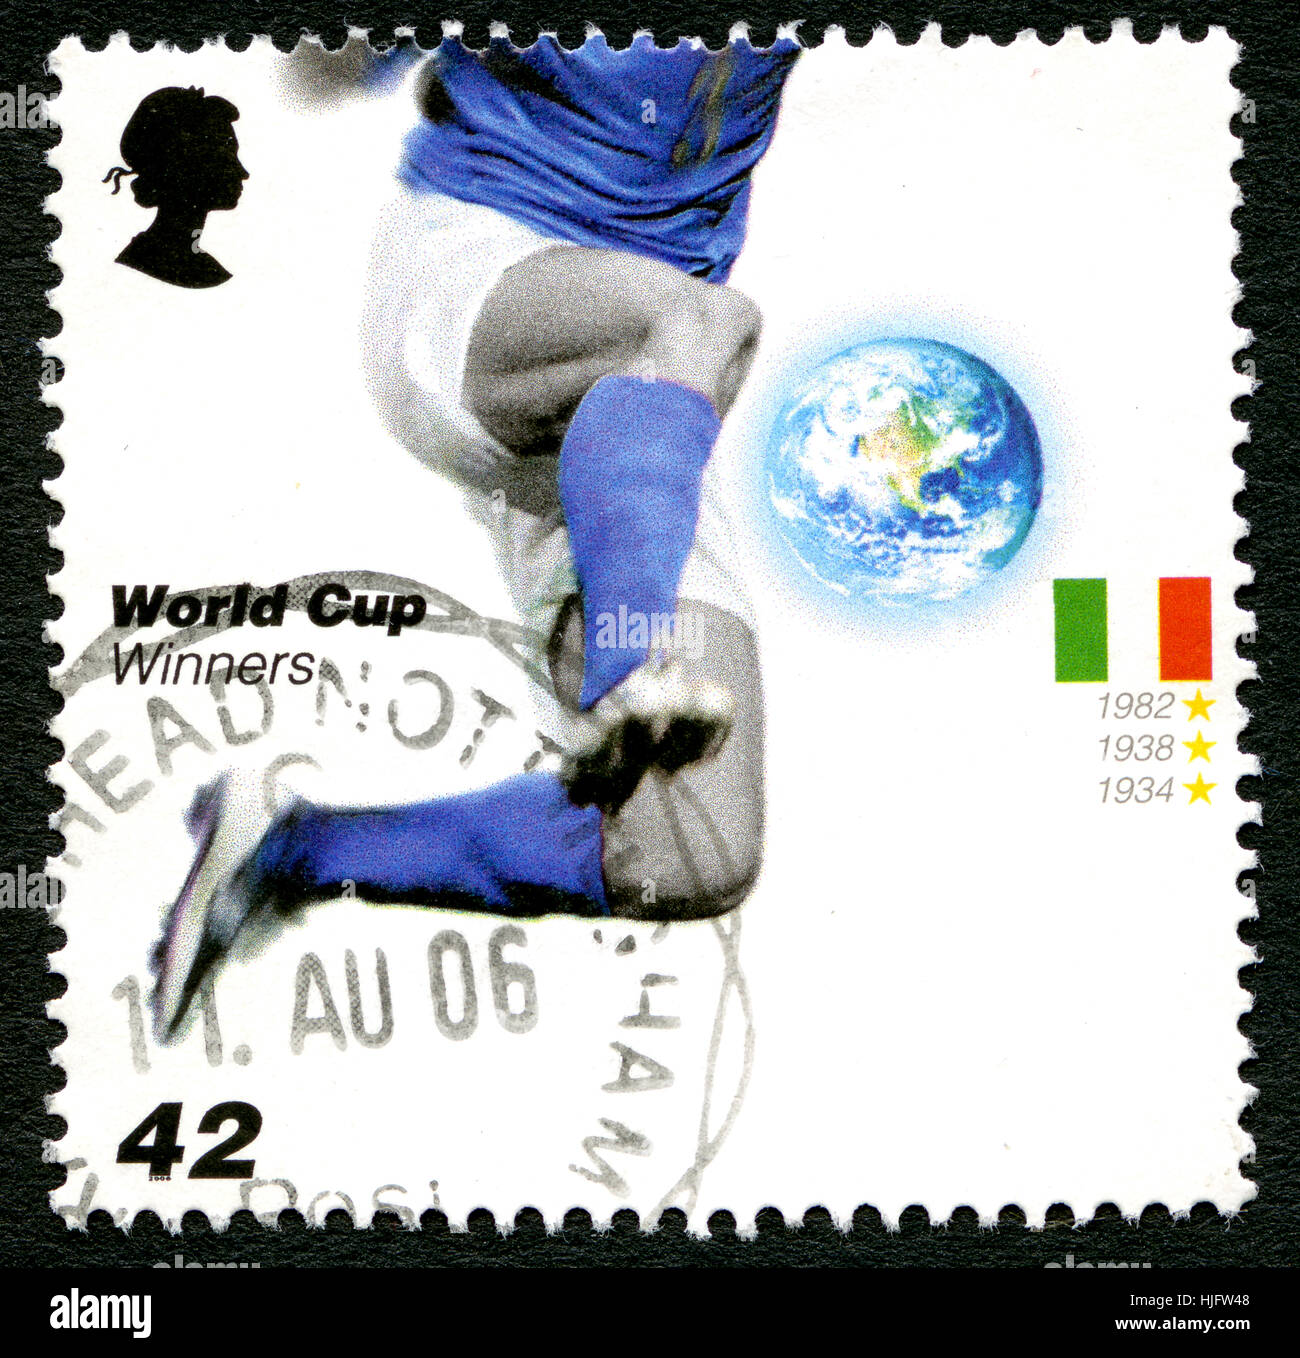 Vereinigtes Königreich - CIRCA 2006: Eine gebrauchte Briefmarke aus dem Vereinigten Königreich, zum Gedenken an vergangene Fußball World Cup Gewinner Italien, circa 2006 ausgestellt. Stockfoto